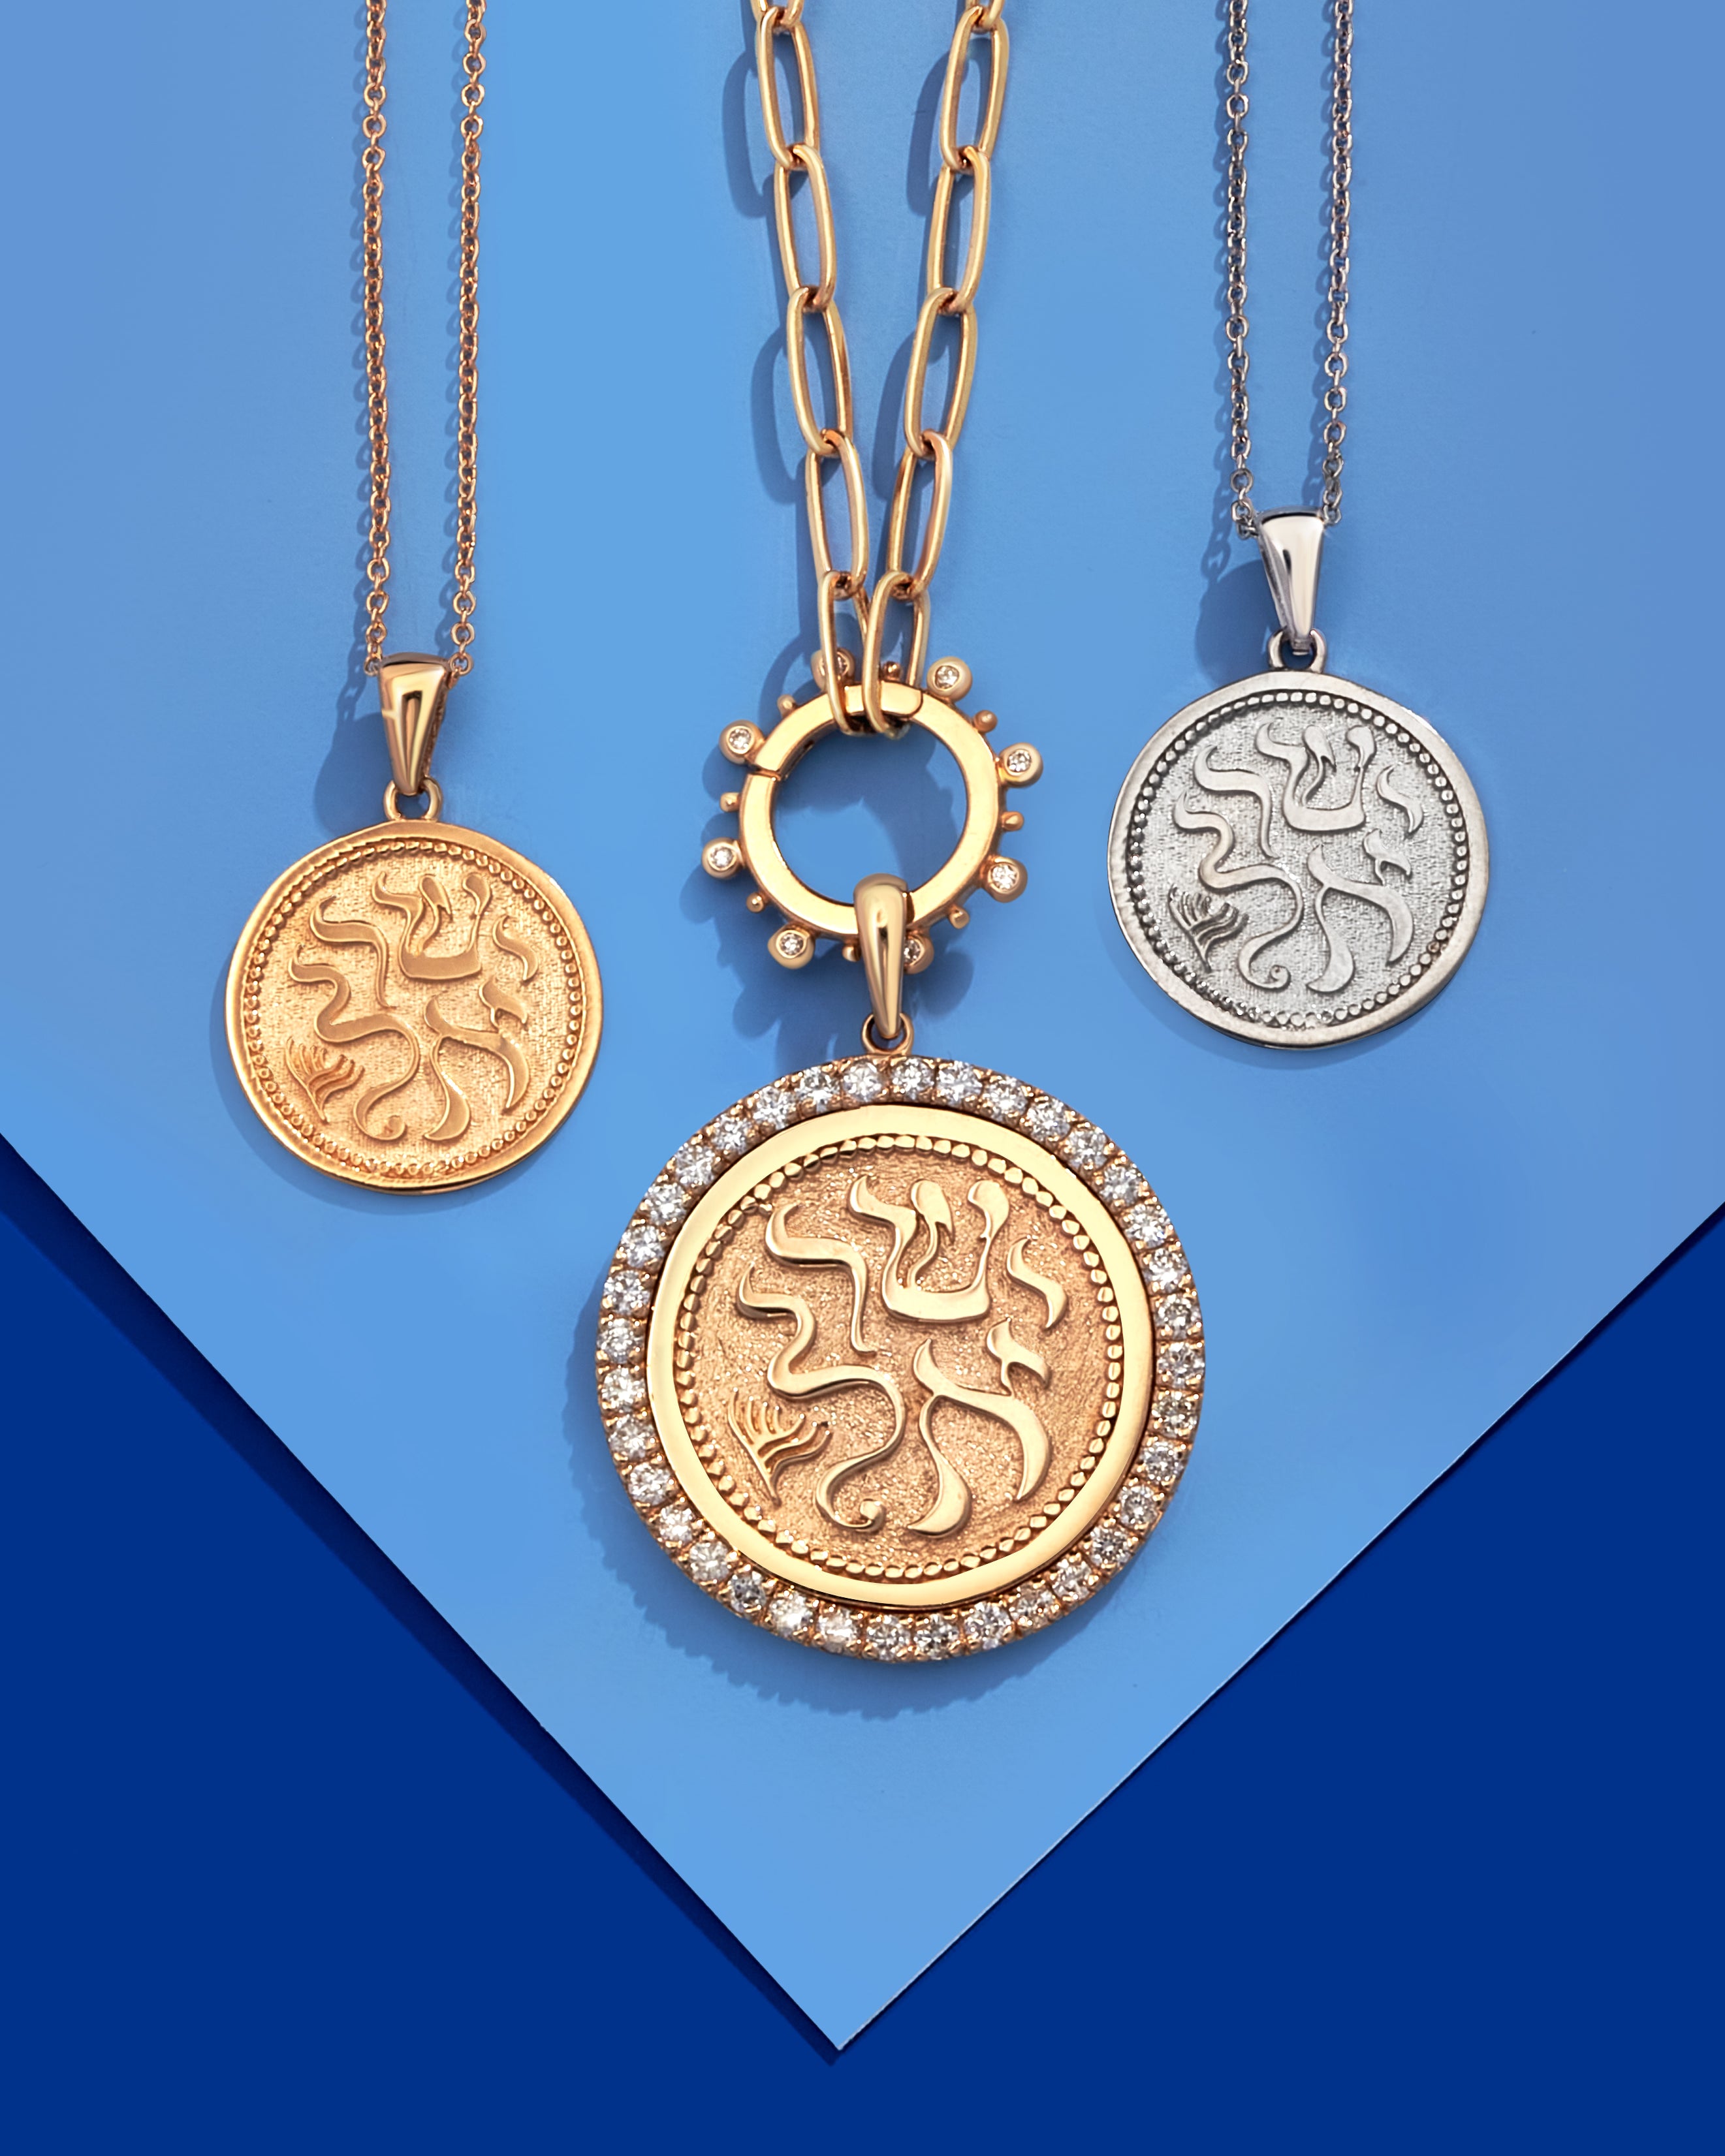 Israel Bonds Gold Medallion Necklace